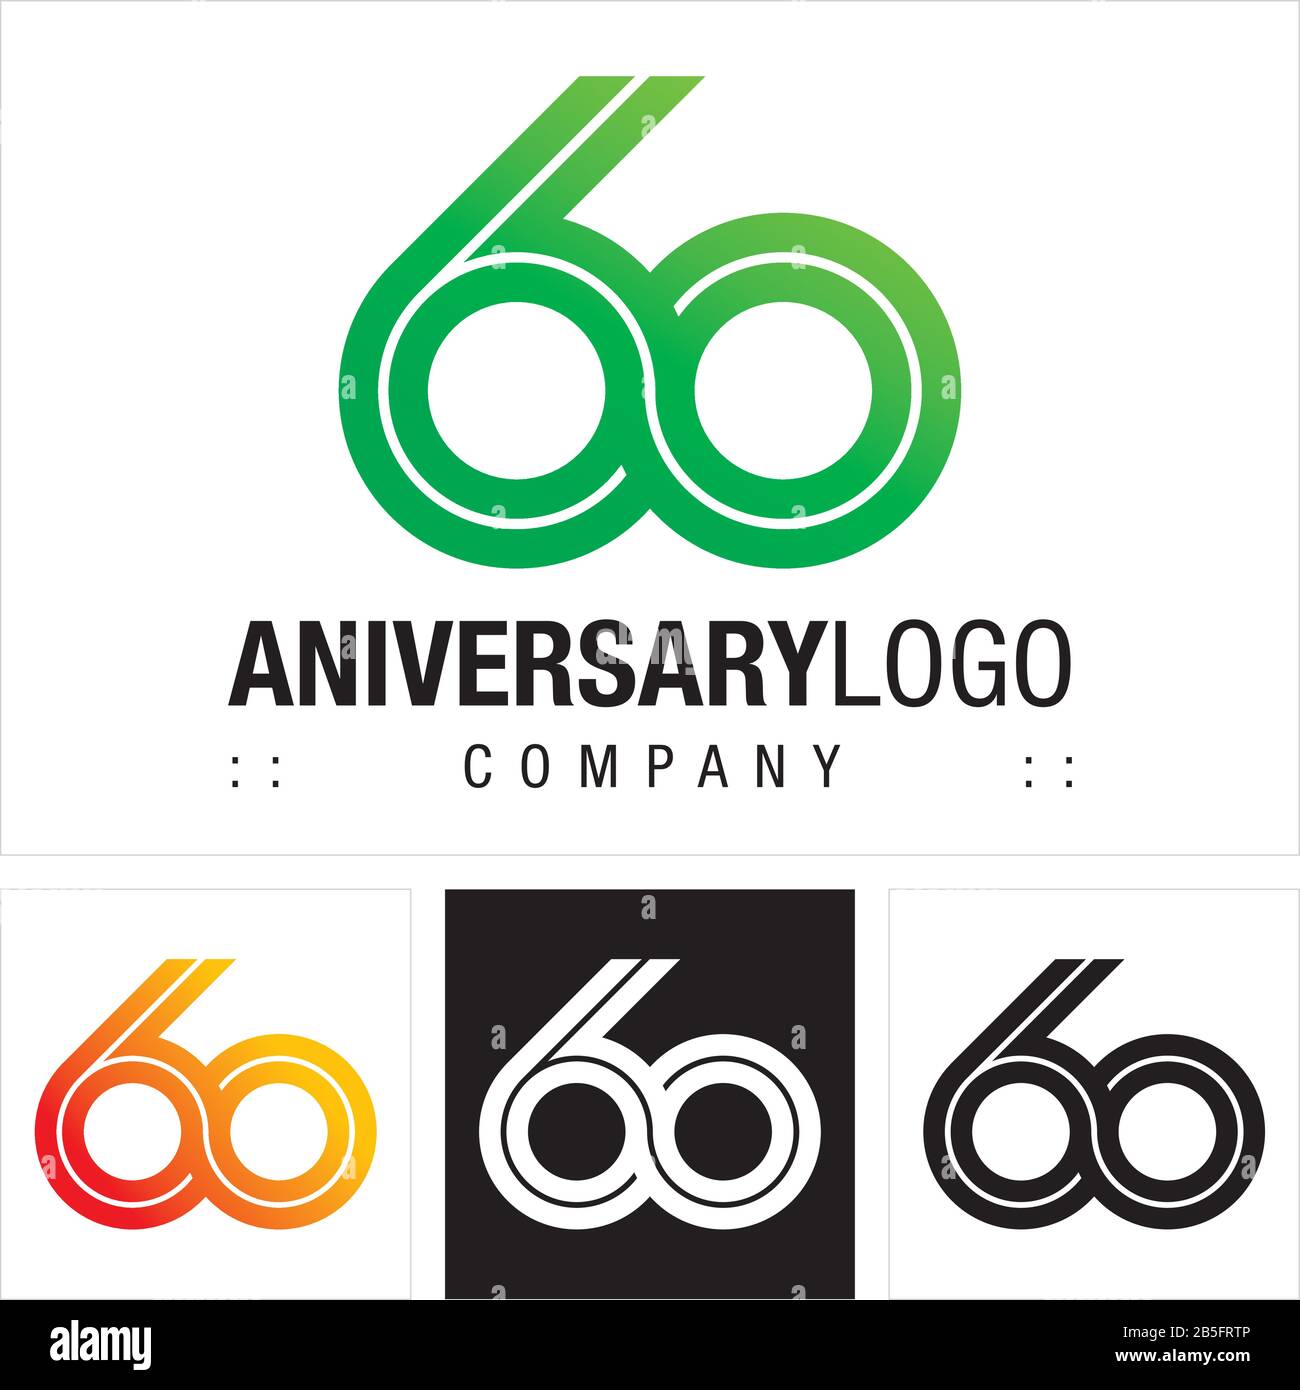 Jahrestag (Nummer 60) Vektor-Symbol Firmenlogo. Infinite Symbol (Unlimited)-Logo. Abbildung des Symbols für das Ziffernlogo. Elegante Identität Concep Stock Vektor